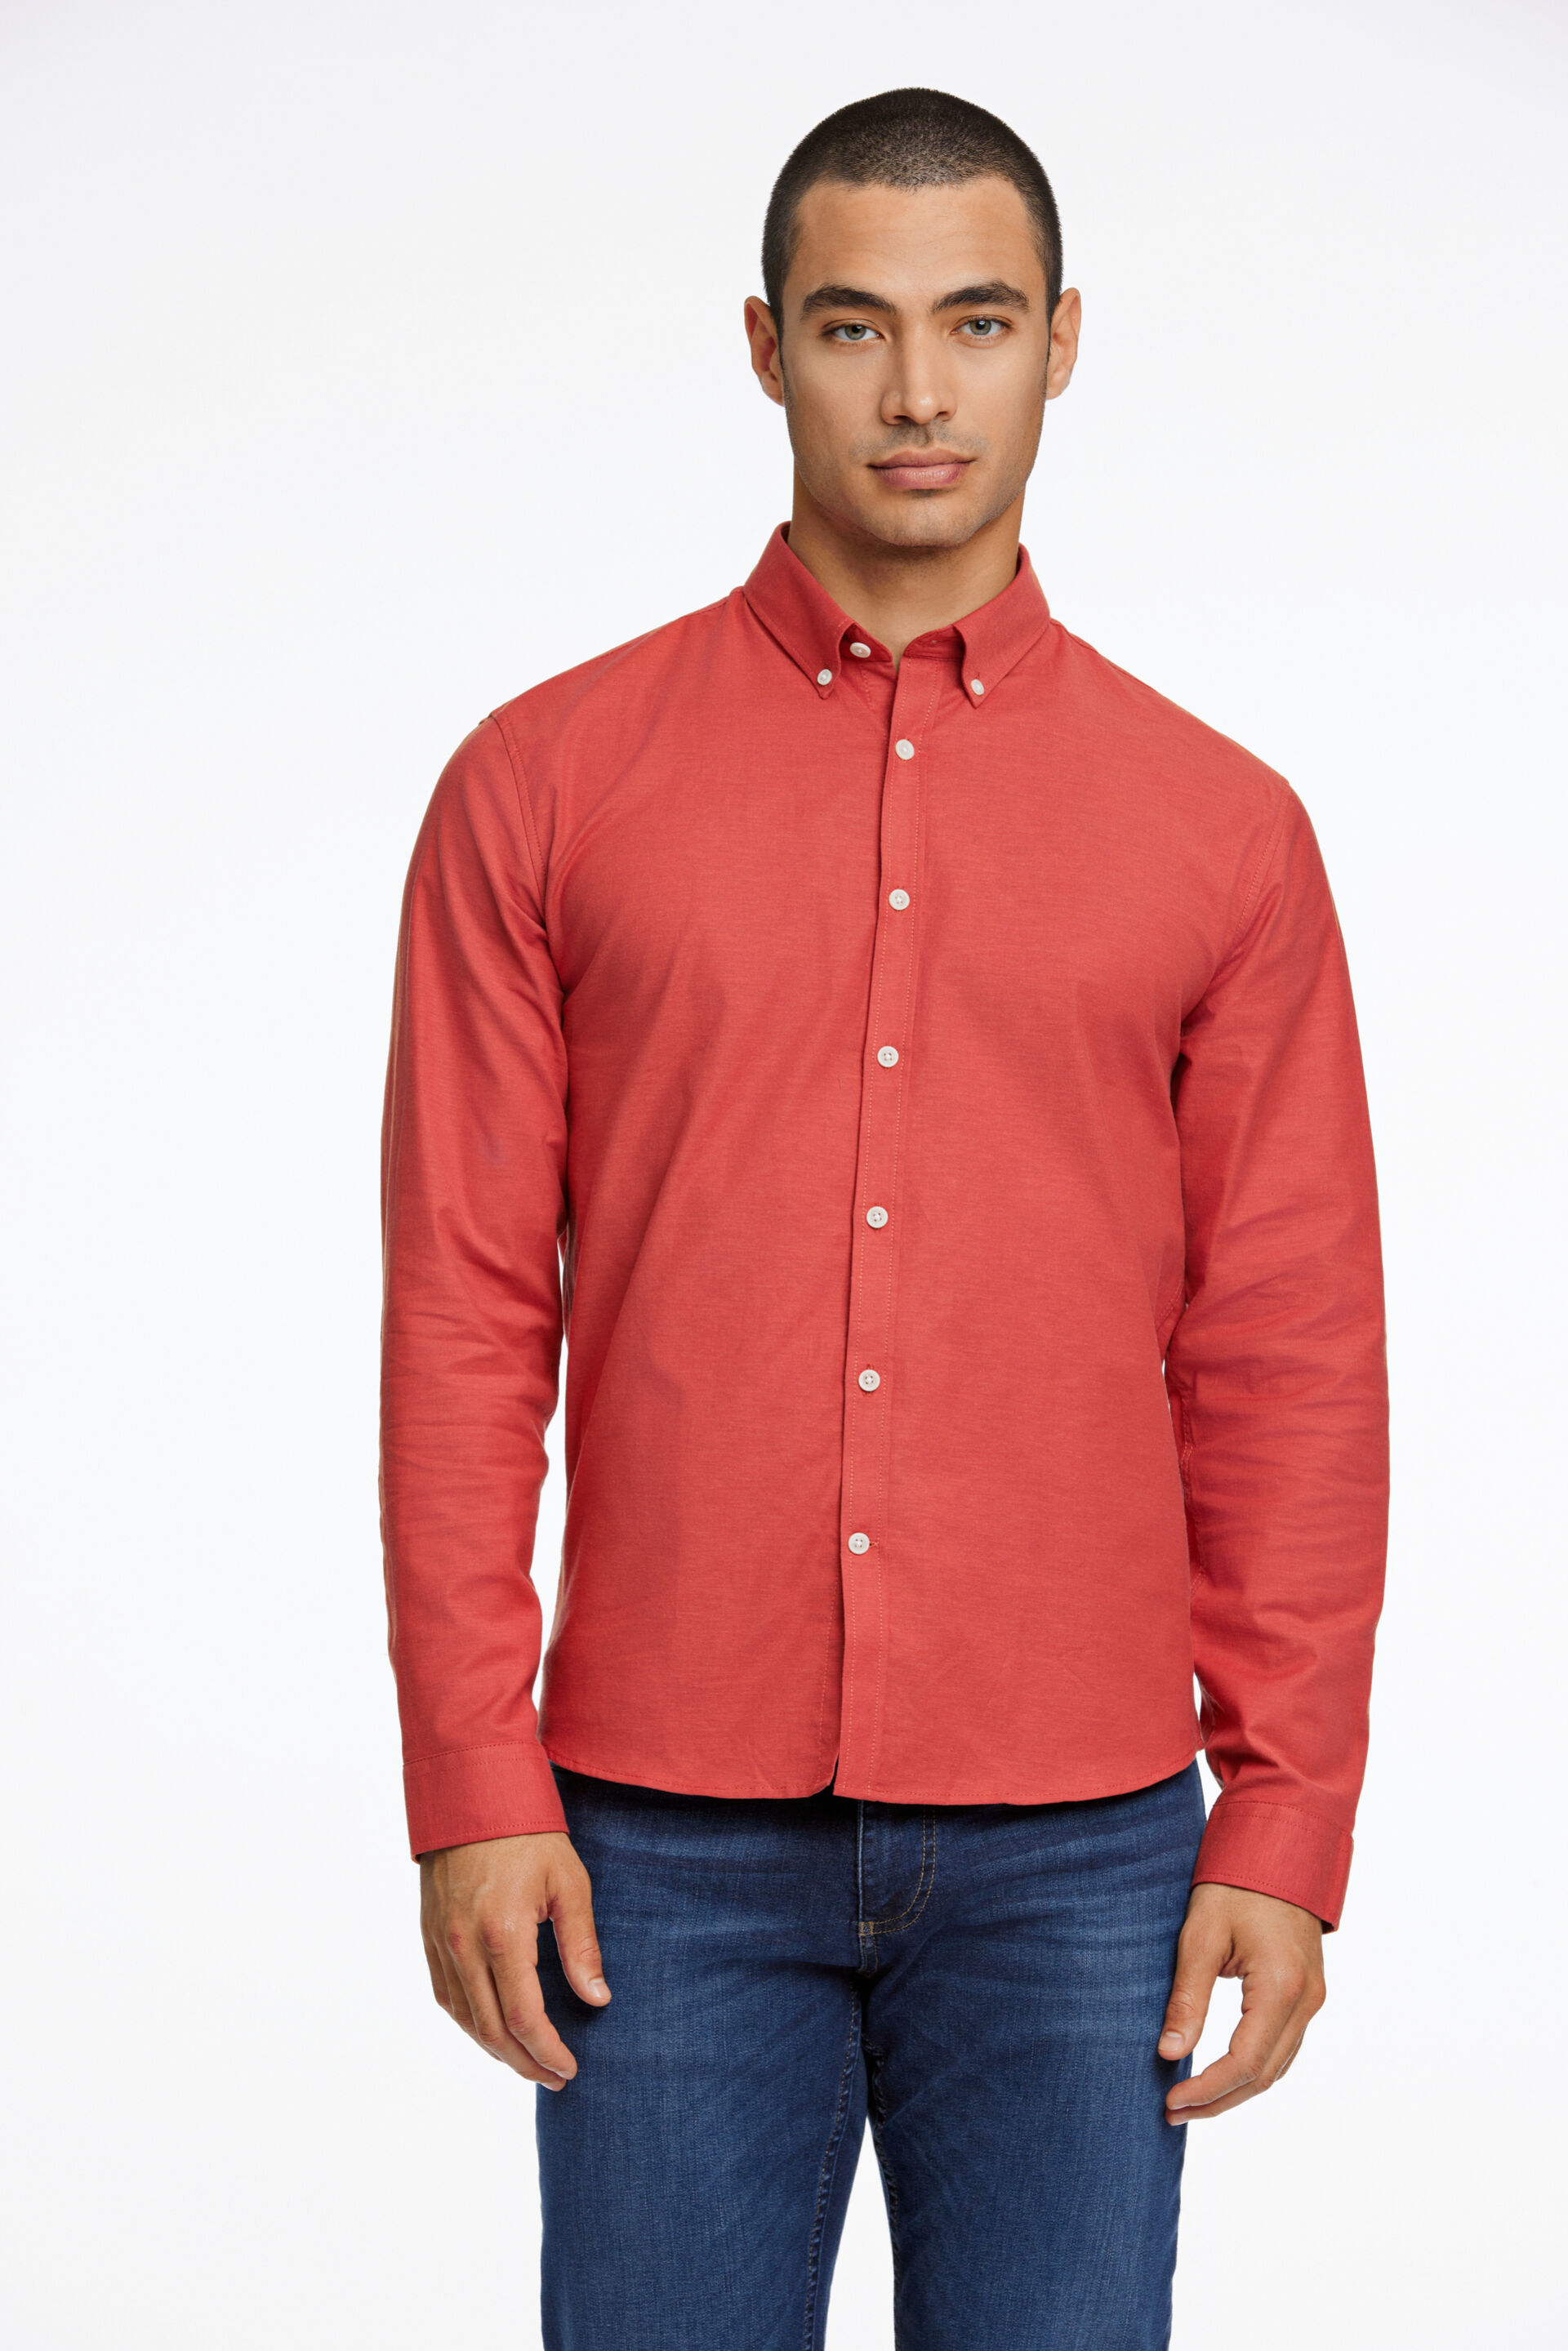 Oxford skjorte Oxford skjorte Rød 30-203174